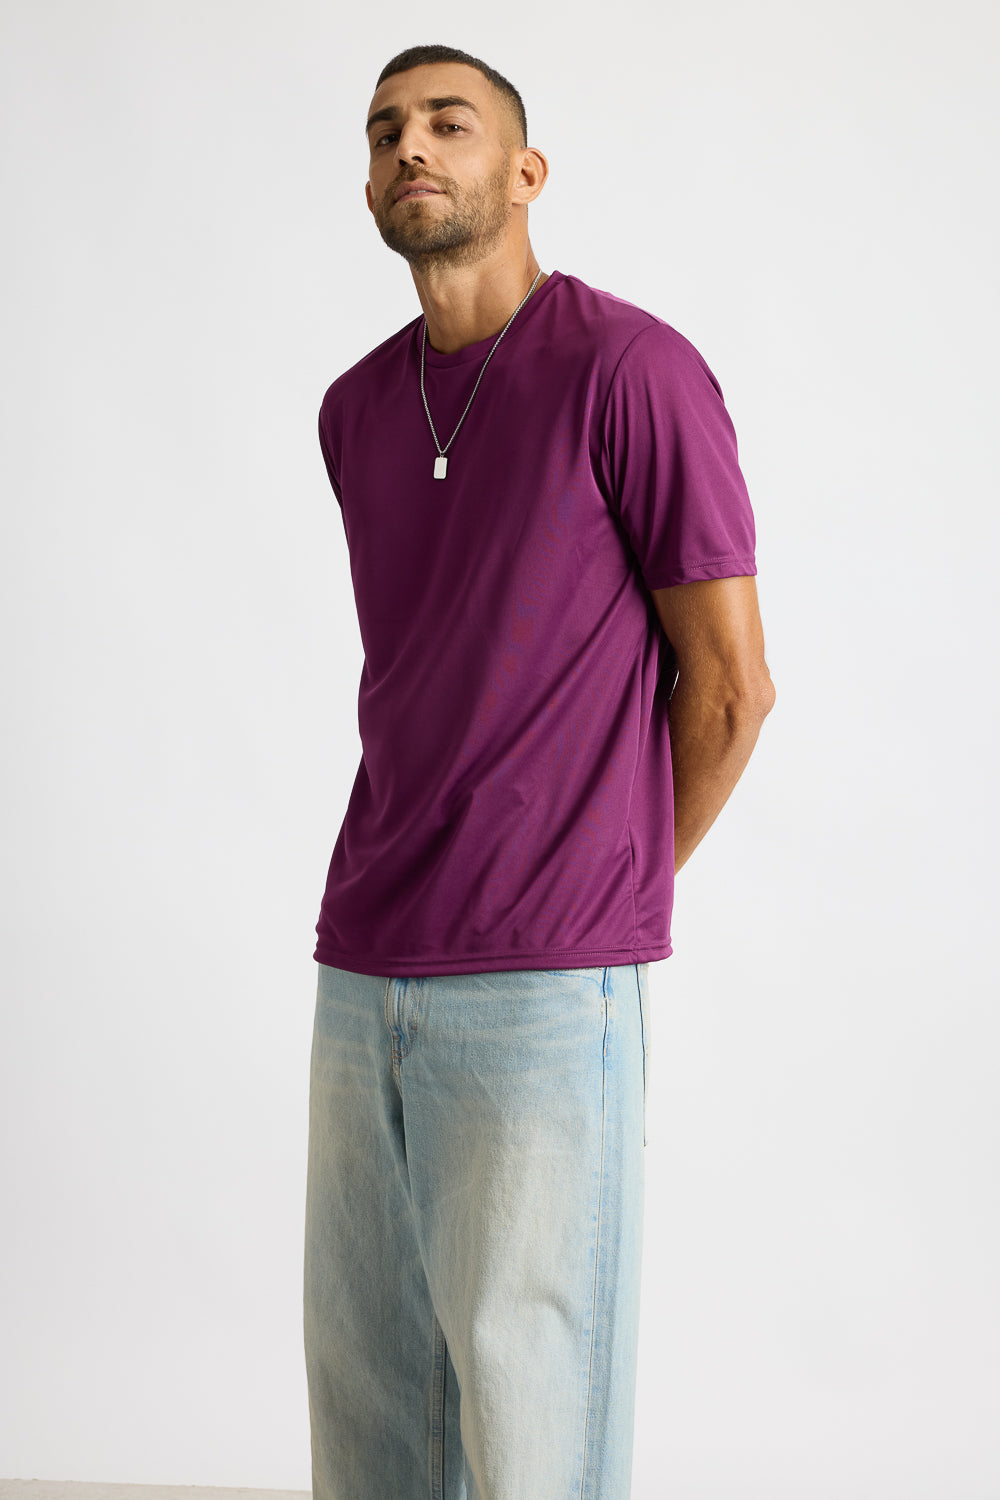 AOP Men's T-shirt - Classic Purple